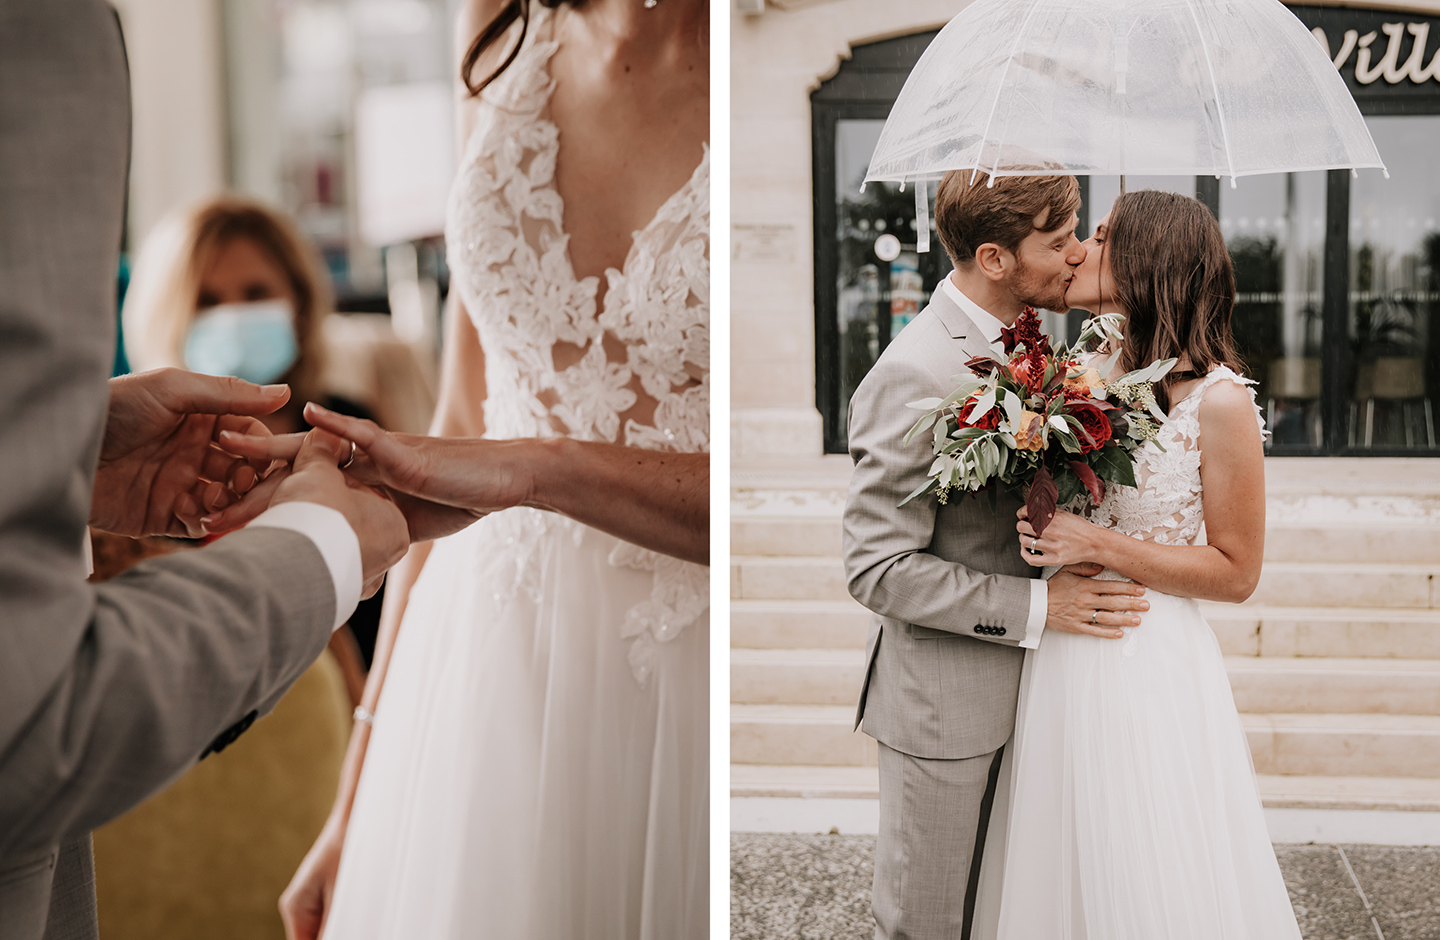 Brautpaar steckt sich im Standesamt die Ringe an und küsst sich unter einem Regenschirm.